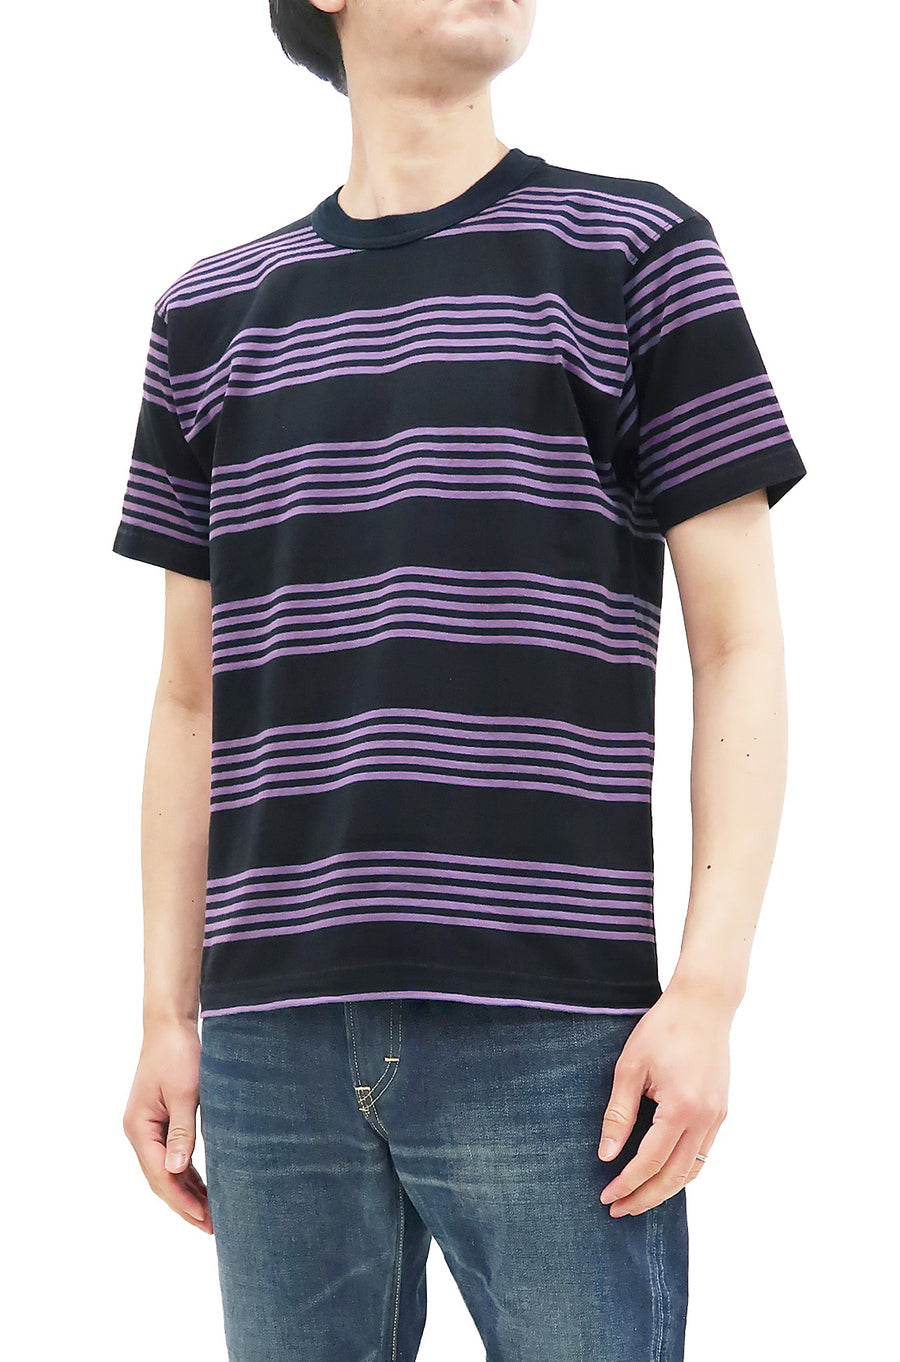 TOYS McCOY Striped T-Shirt Men's Steve McQueen Short Sleeve Stripe Tee TMC2342 121 Blue/Black